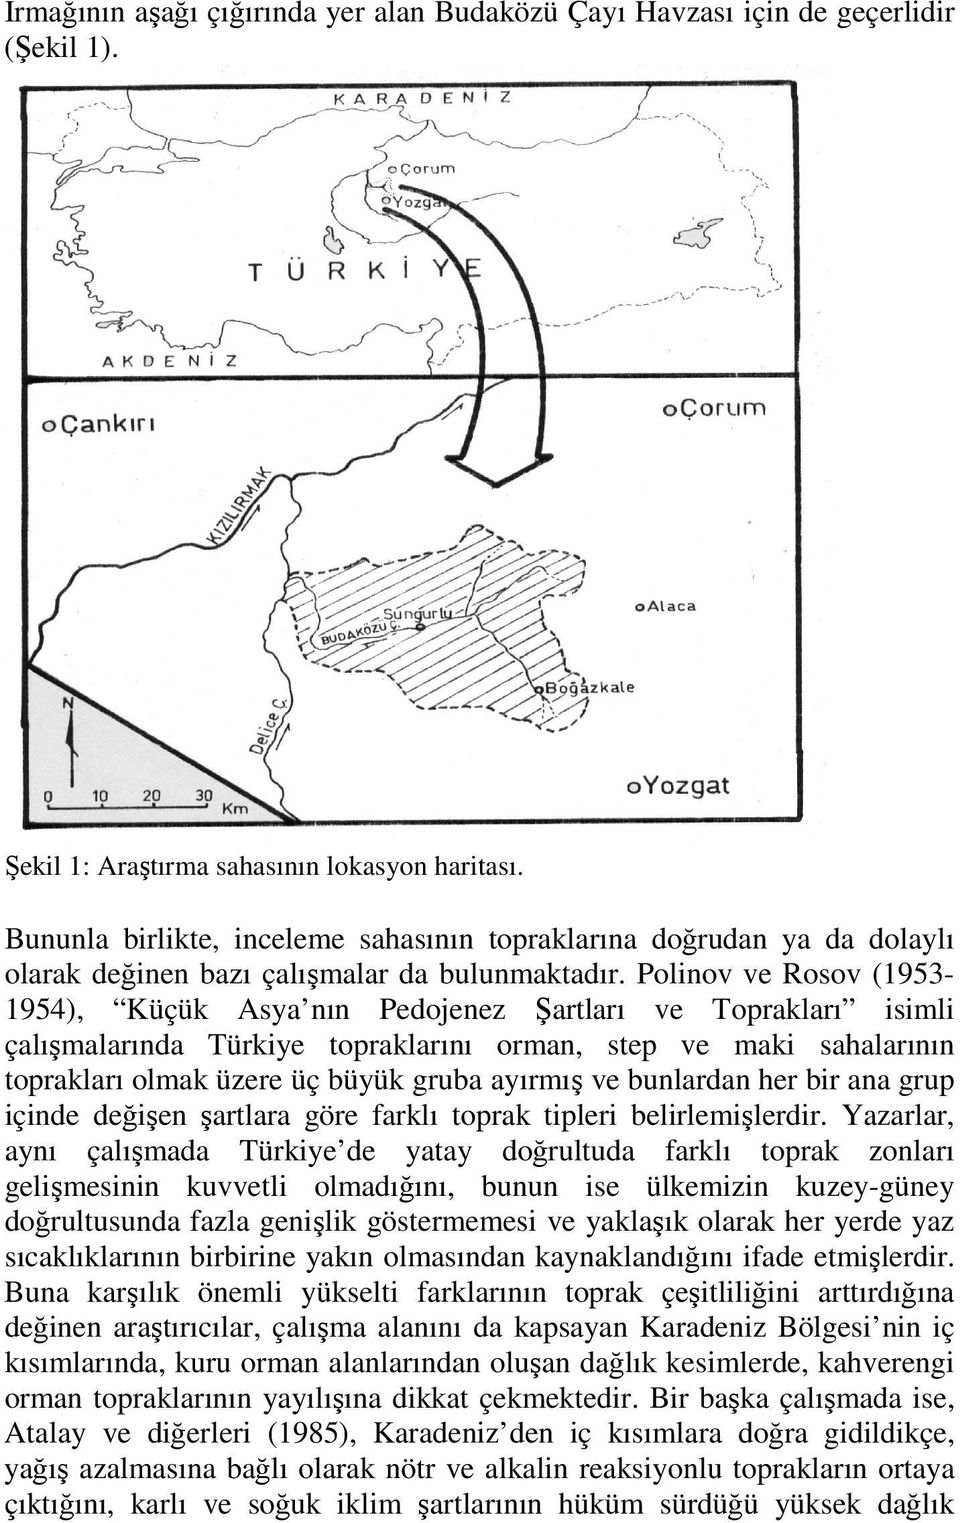 Polinov ve Rosov (1953-1954), Küçük Asya nın Pedojenez Şartları ve Toprakları isimli çalışmalarında Türkiye topraklarını orman, step ve maki sahalarının toprakları olmak üzere üç büyük gruba ayırmış